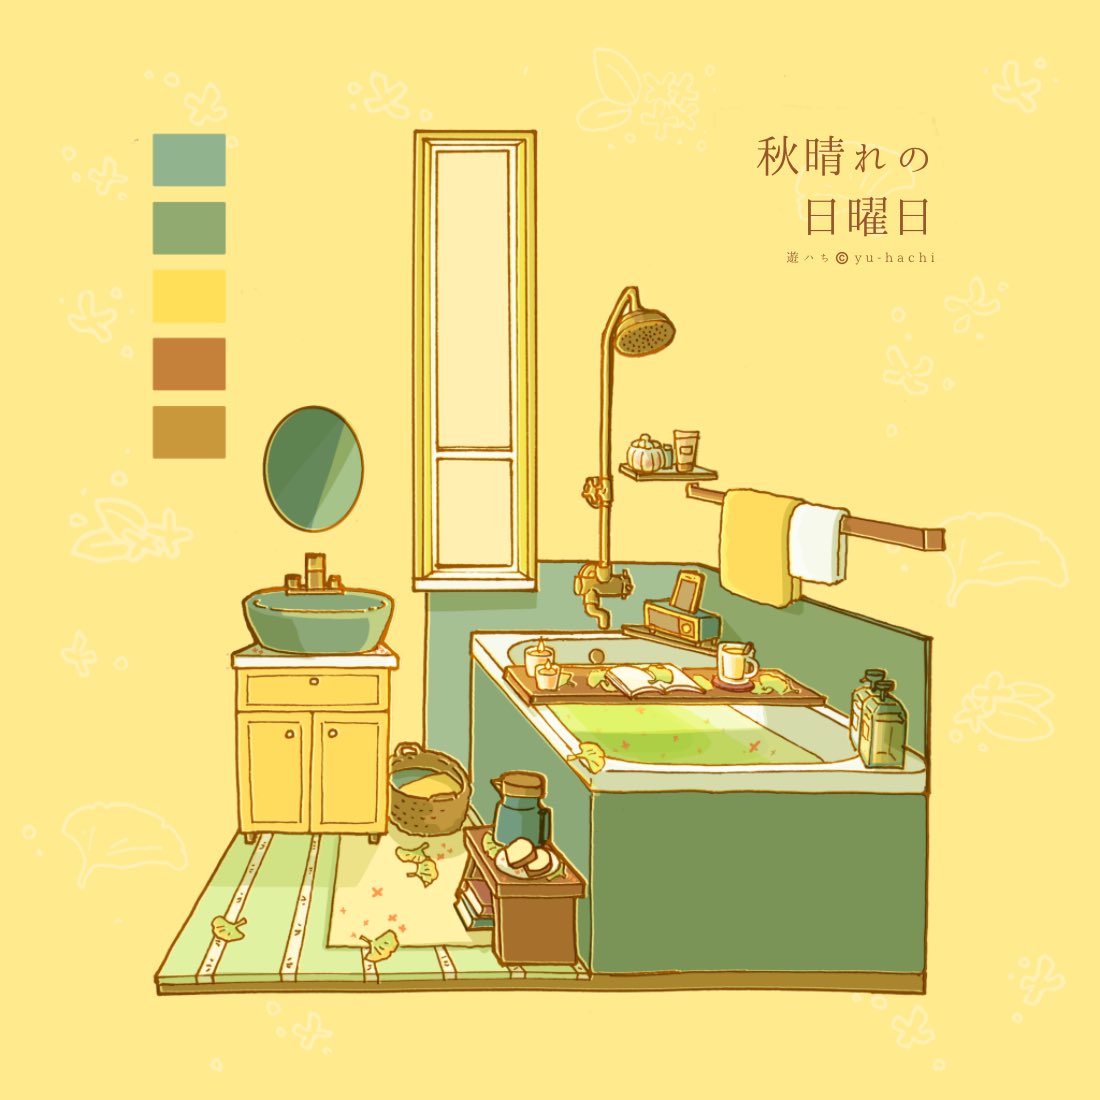 「#いい風呂の日 再掲:秋晴れの日曜日 」|遊ハち(5/20デザフェス)のイラスト